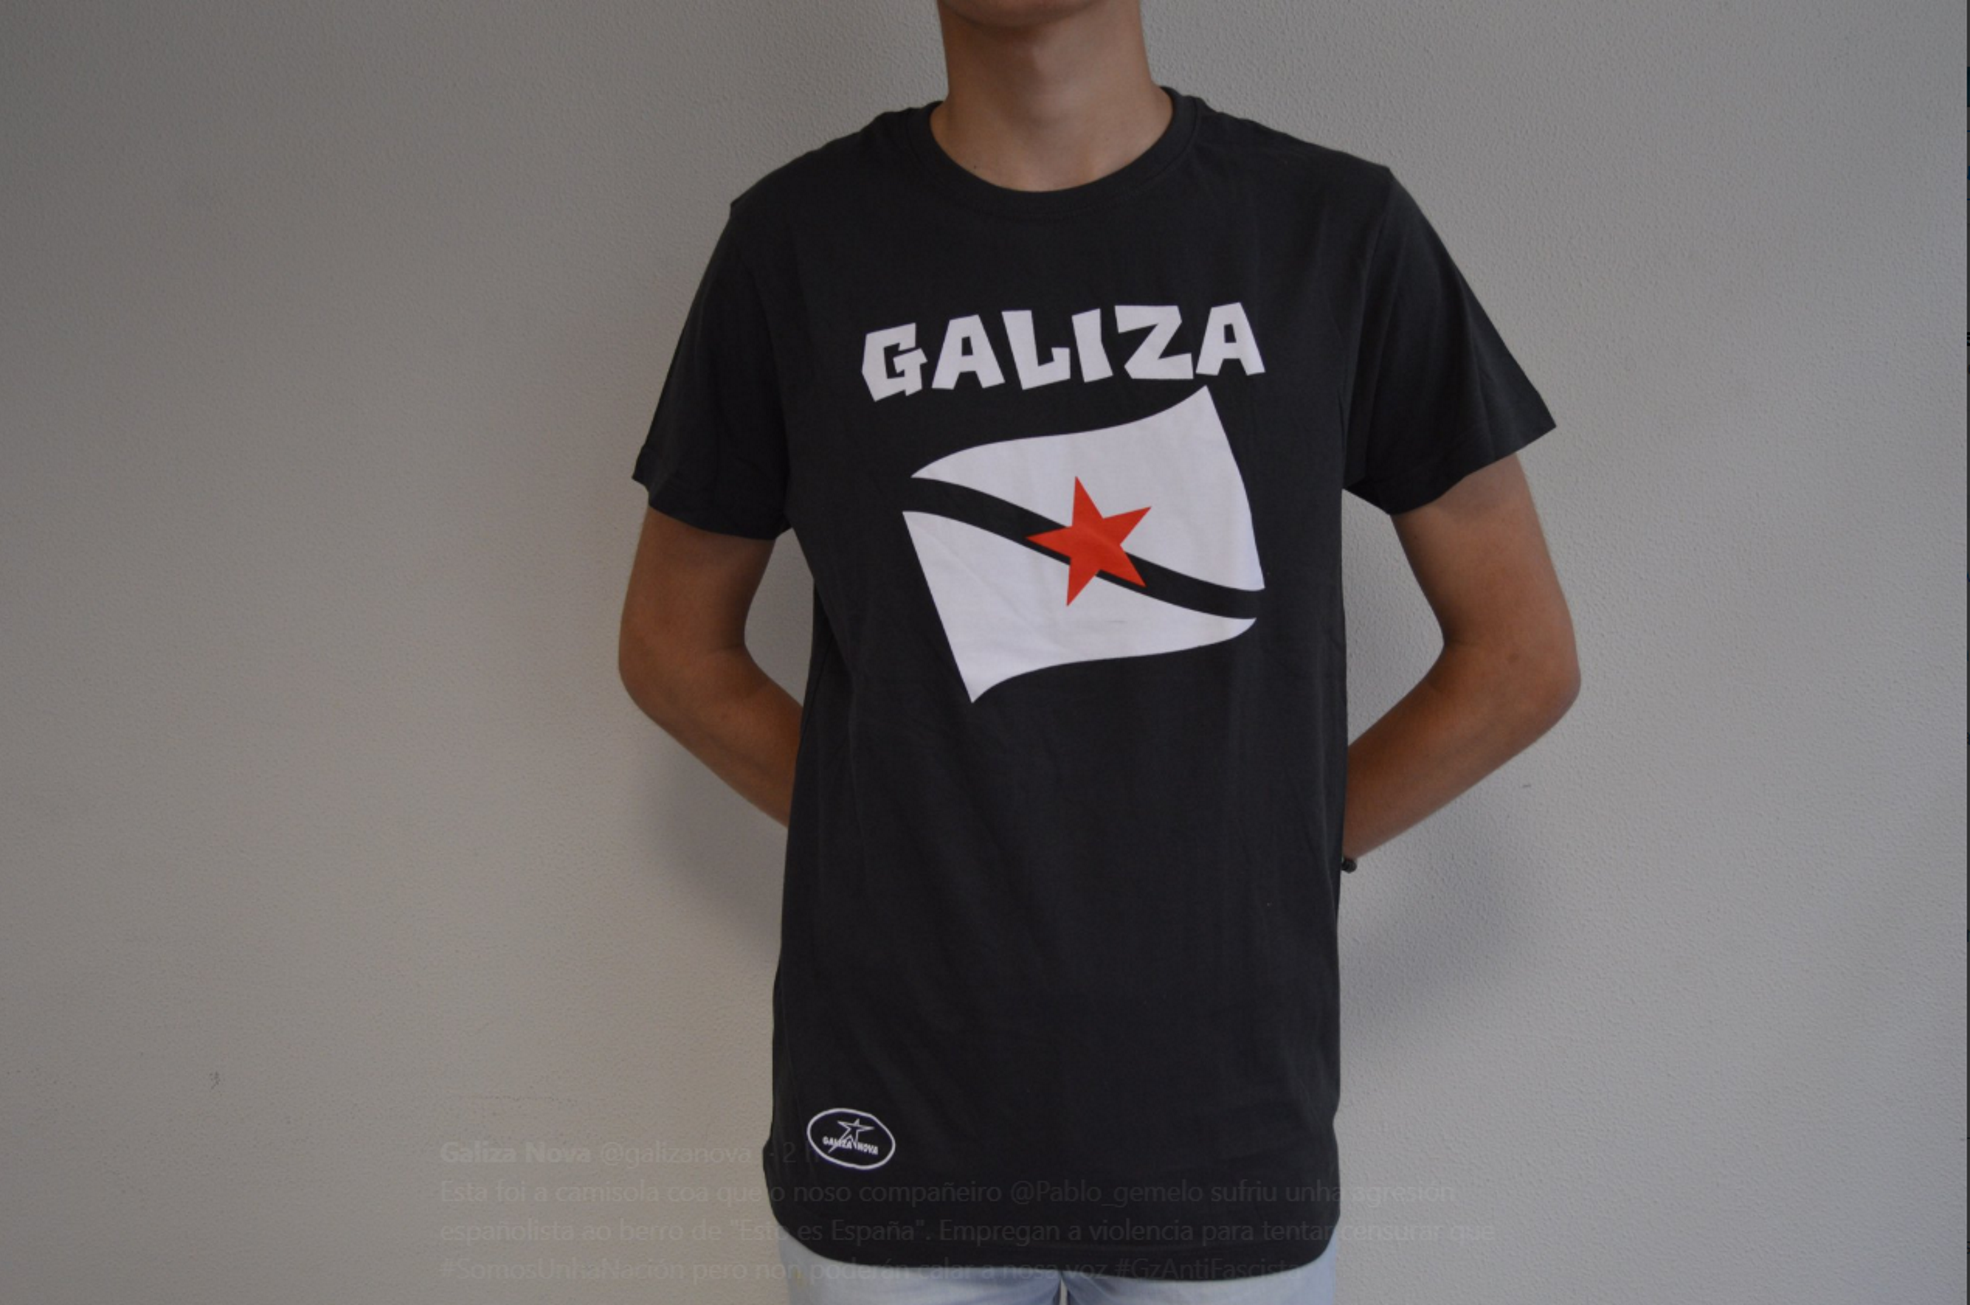 Agredeixen un jove per dur una samarreta amb l'estelada gallega: "¡Esto es España!"